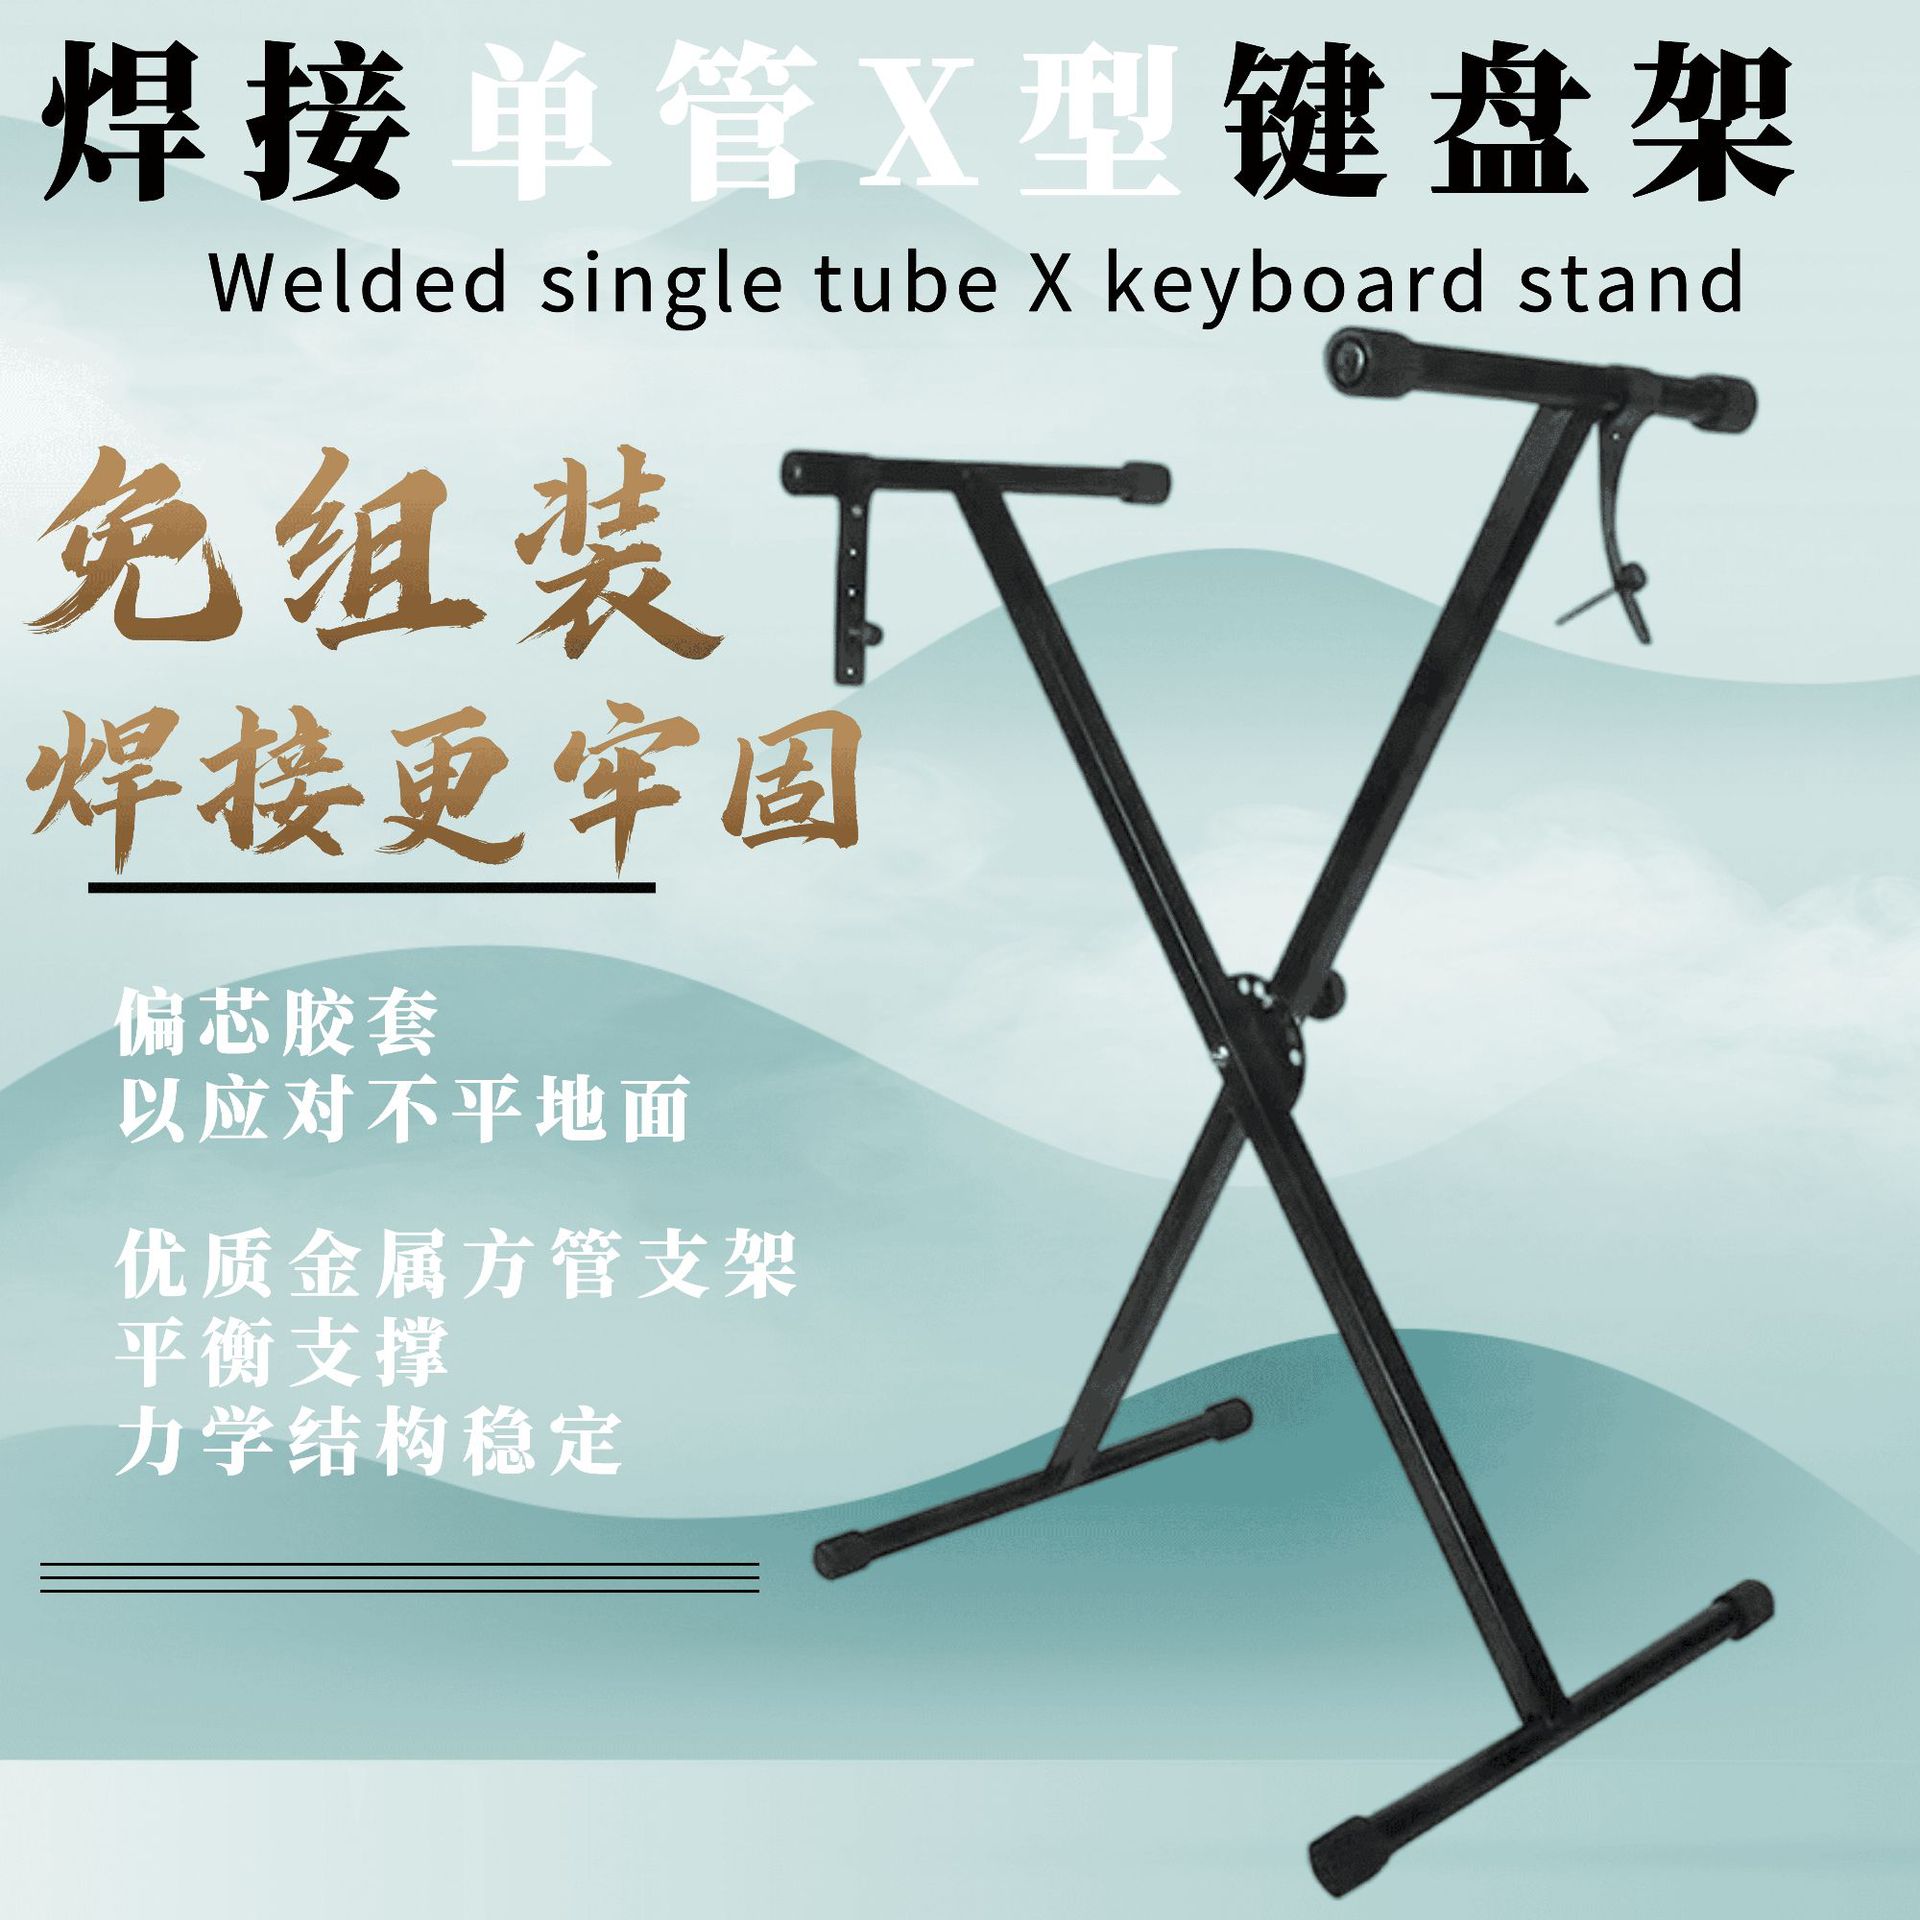 焊接免组装单管电子琴X型支架 电子琴支架 键盘乐器支架双管配件